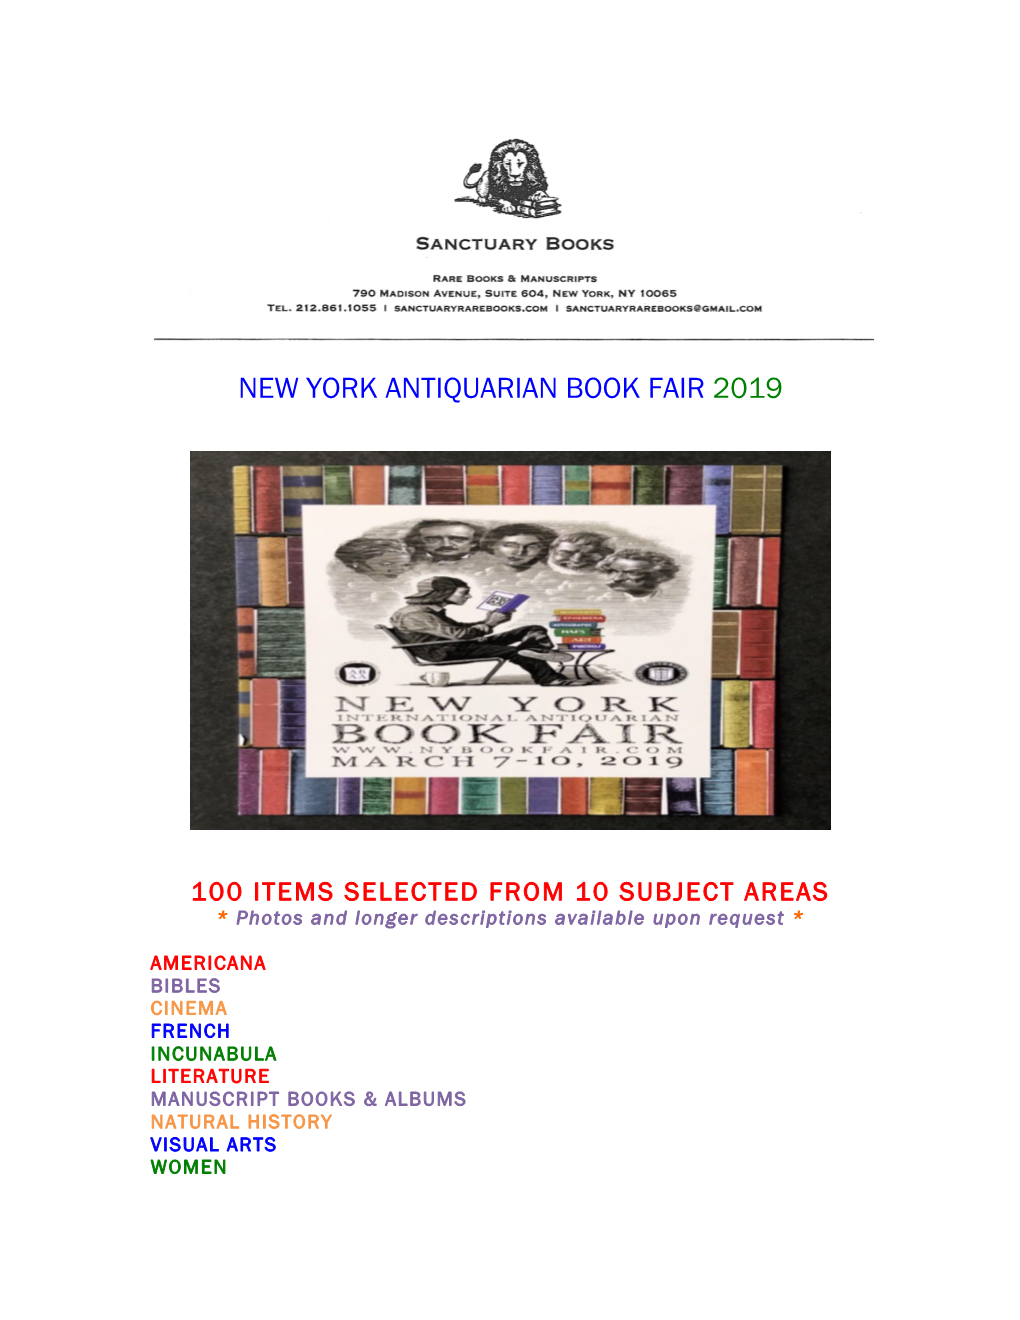 New York Antiquarian Book Fair 2019